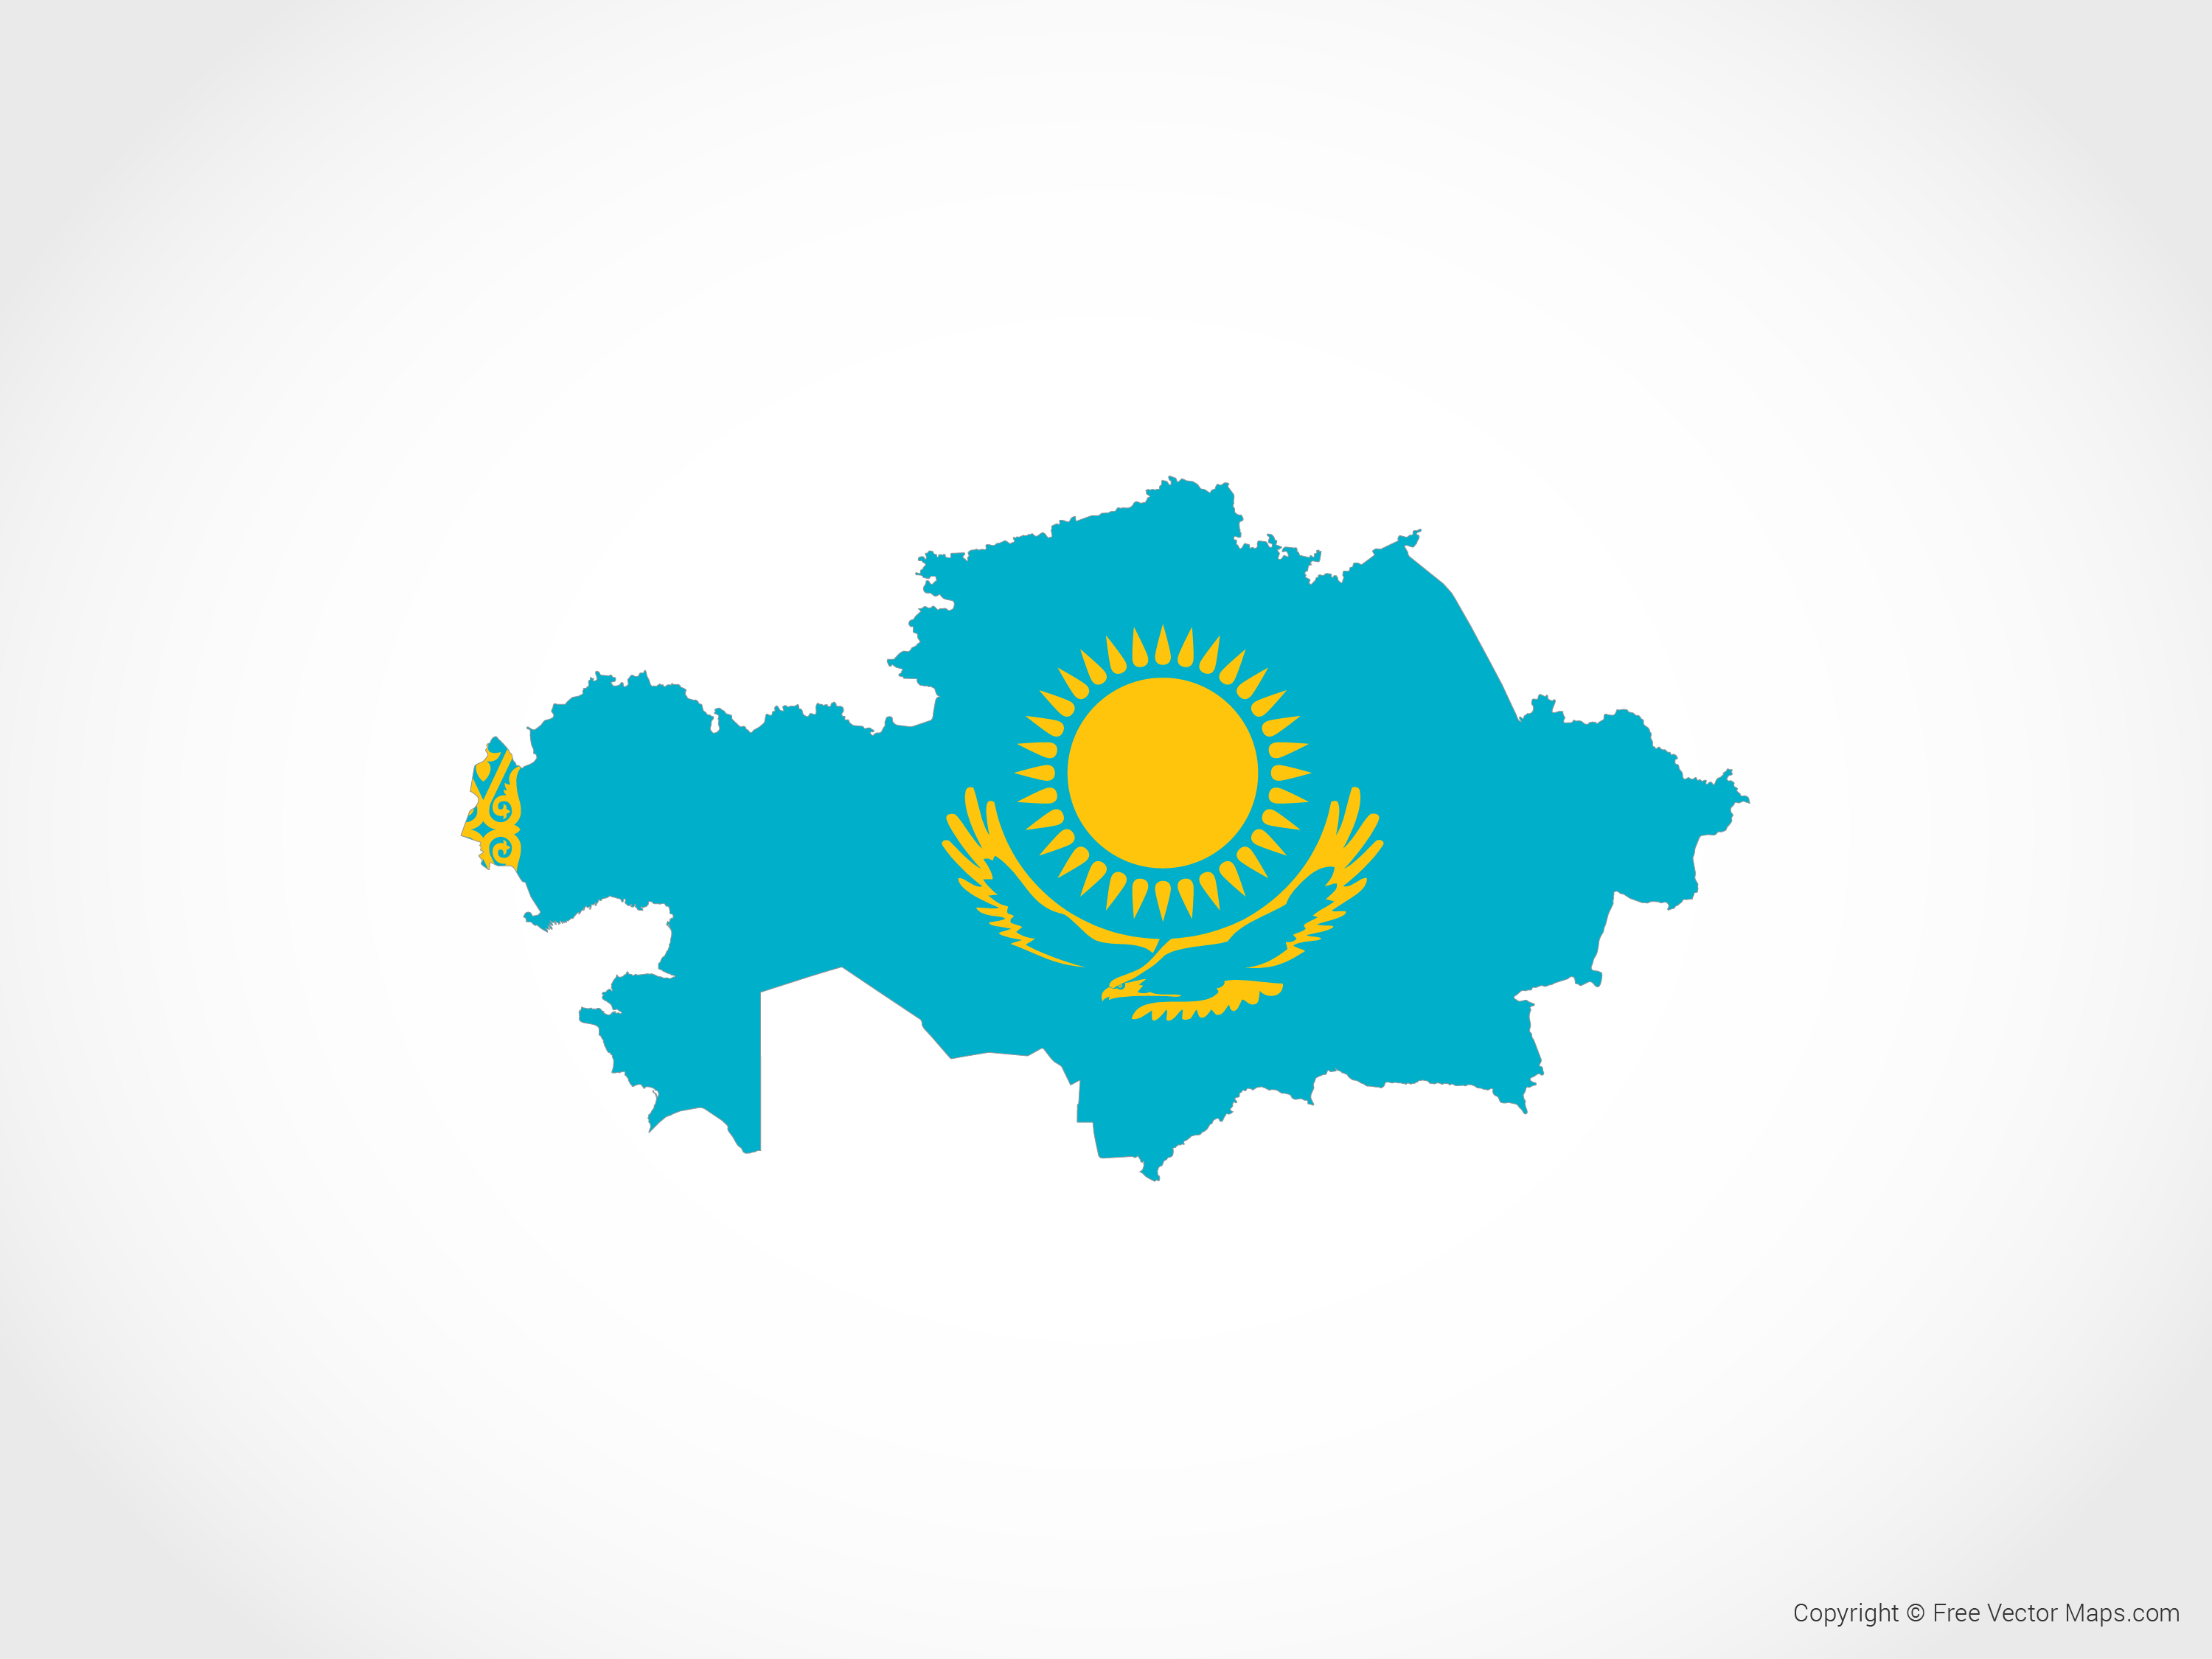 Qfl казахстан. Карта 3д Казахстан Казахстана. Казахстан на карте с флагом. Территория Казахстана с флагом. Карта Казахстана вектор.